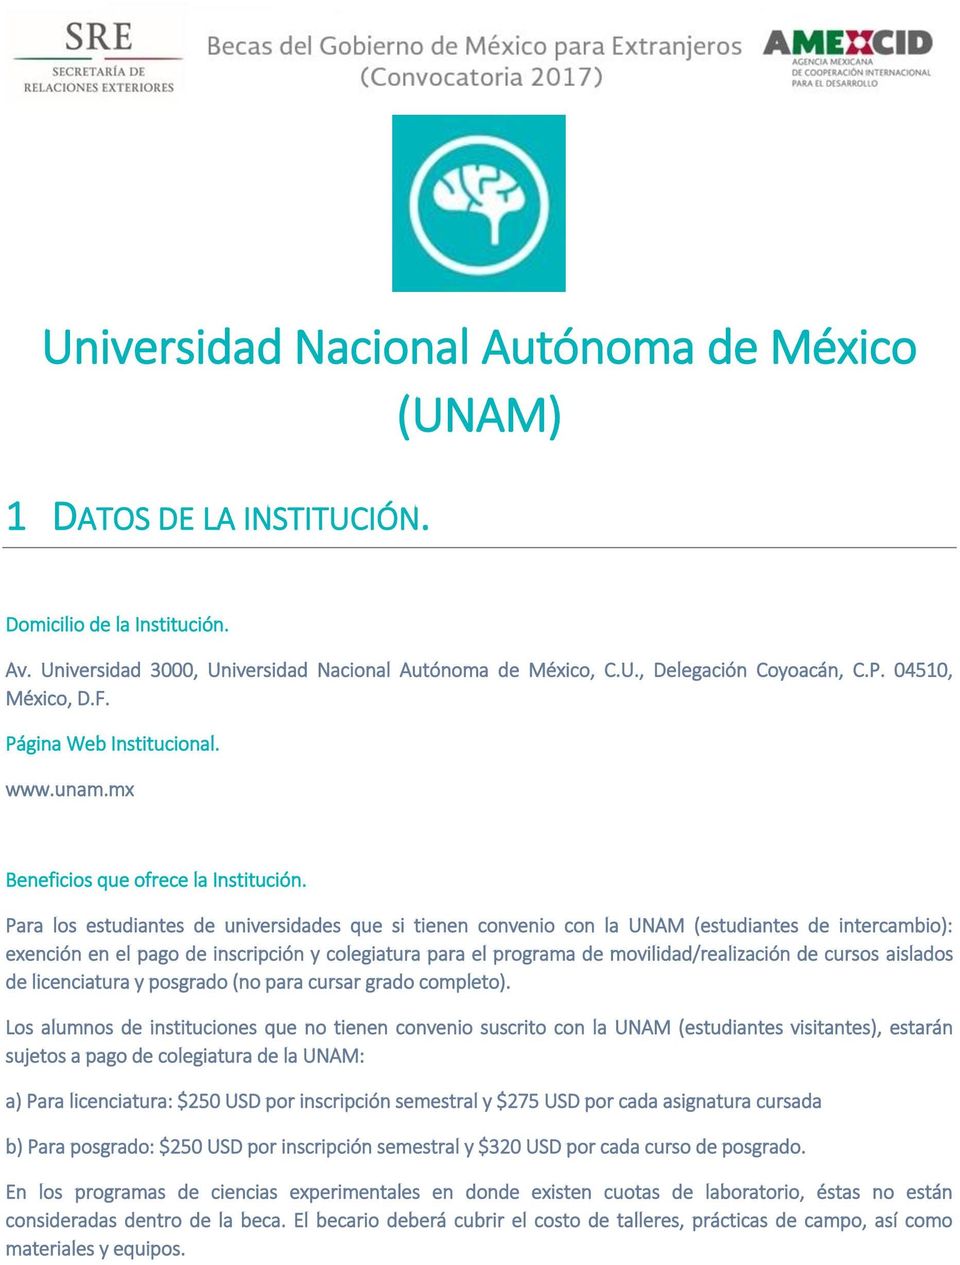 Para los estudiantes de universidades que si tienen convenio con la UNAM (estudiantes de intercambio): exención en el pago de inscripción y colegiatura para el programa de movilidad/realización de